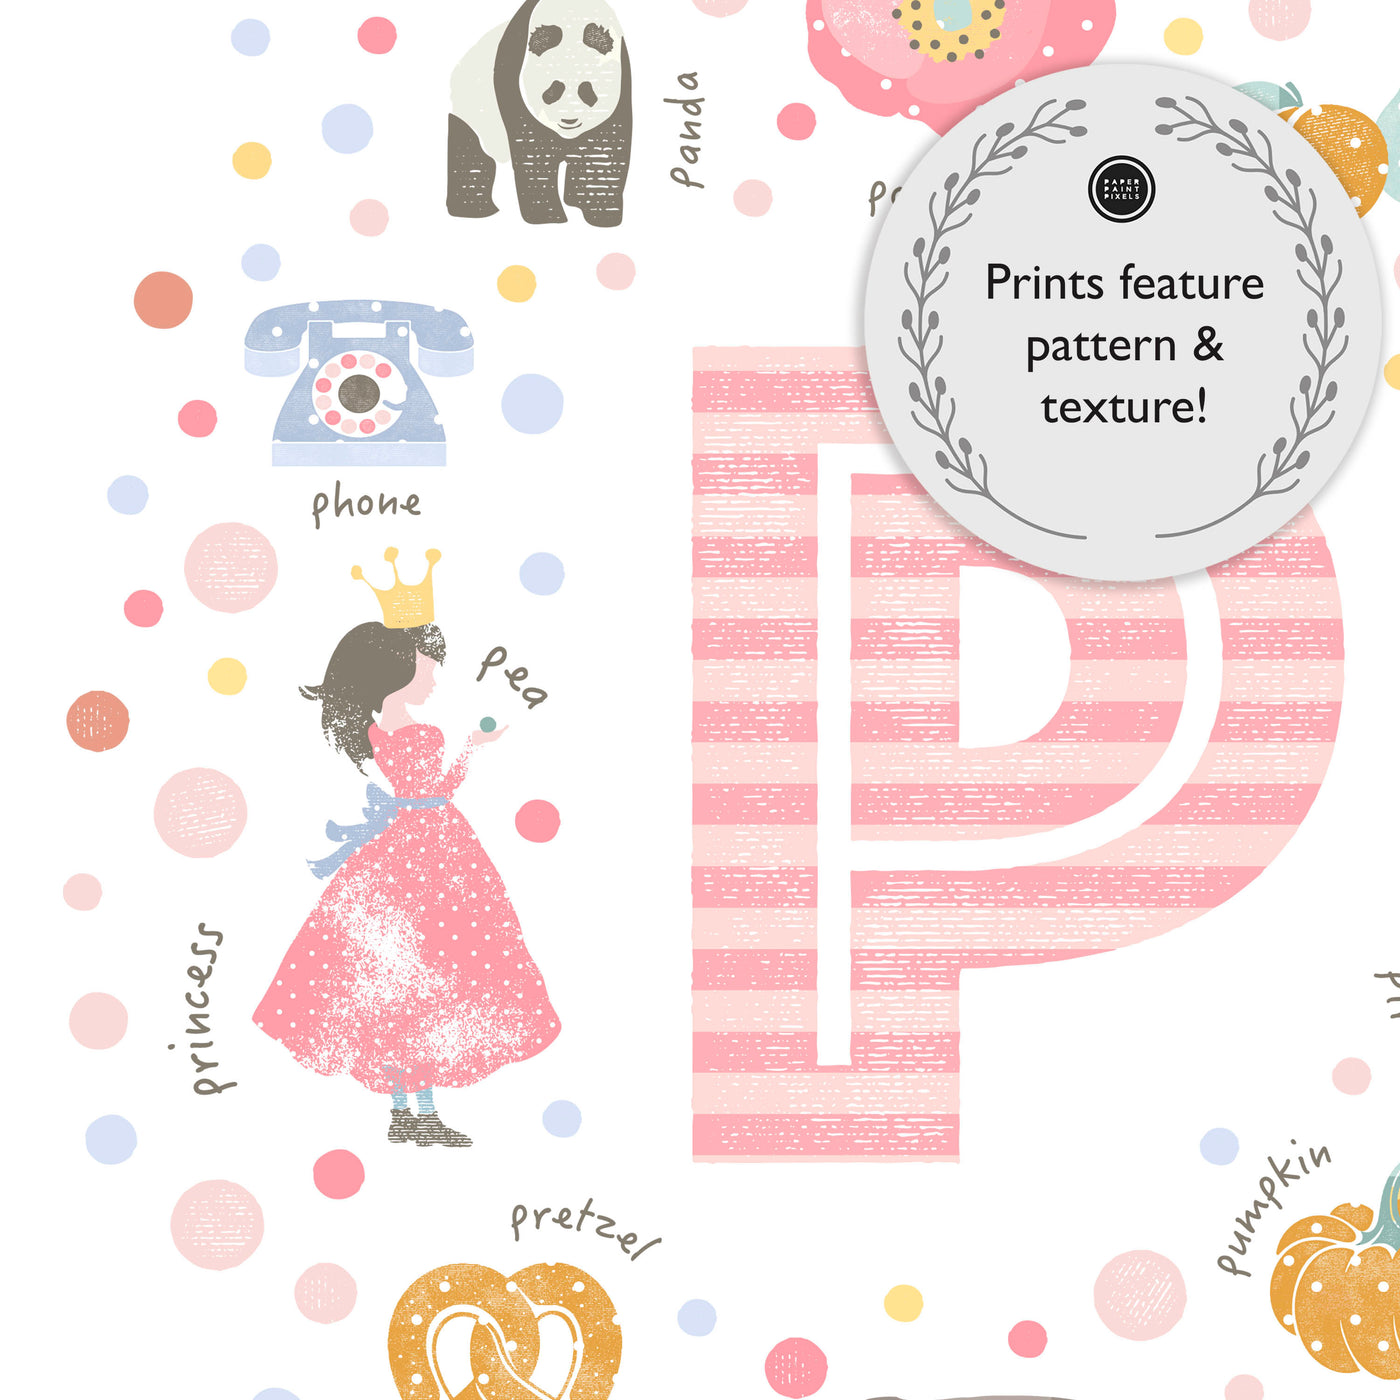 Girls Initial Letter P Print - PaperPaintPixels